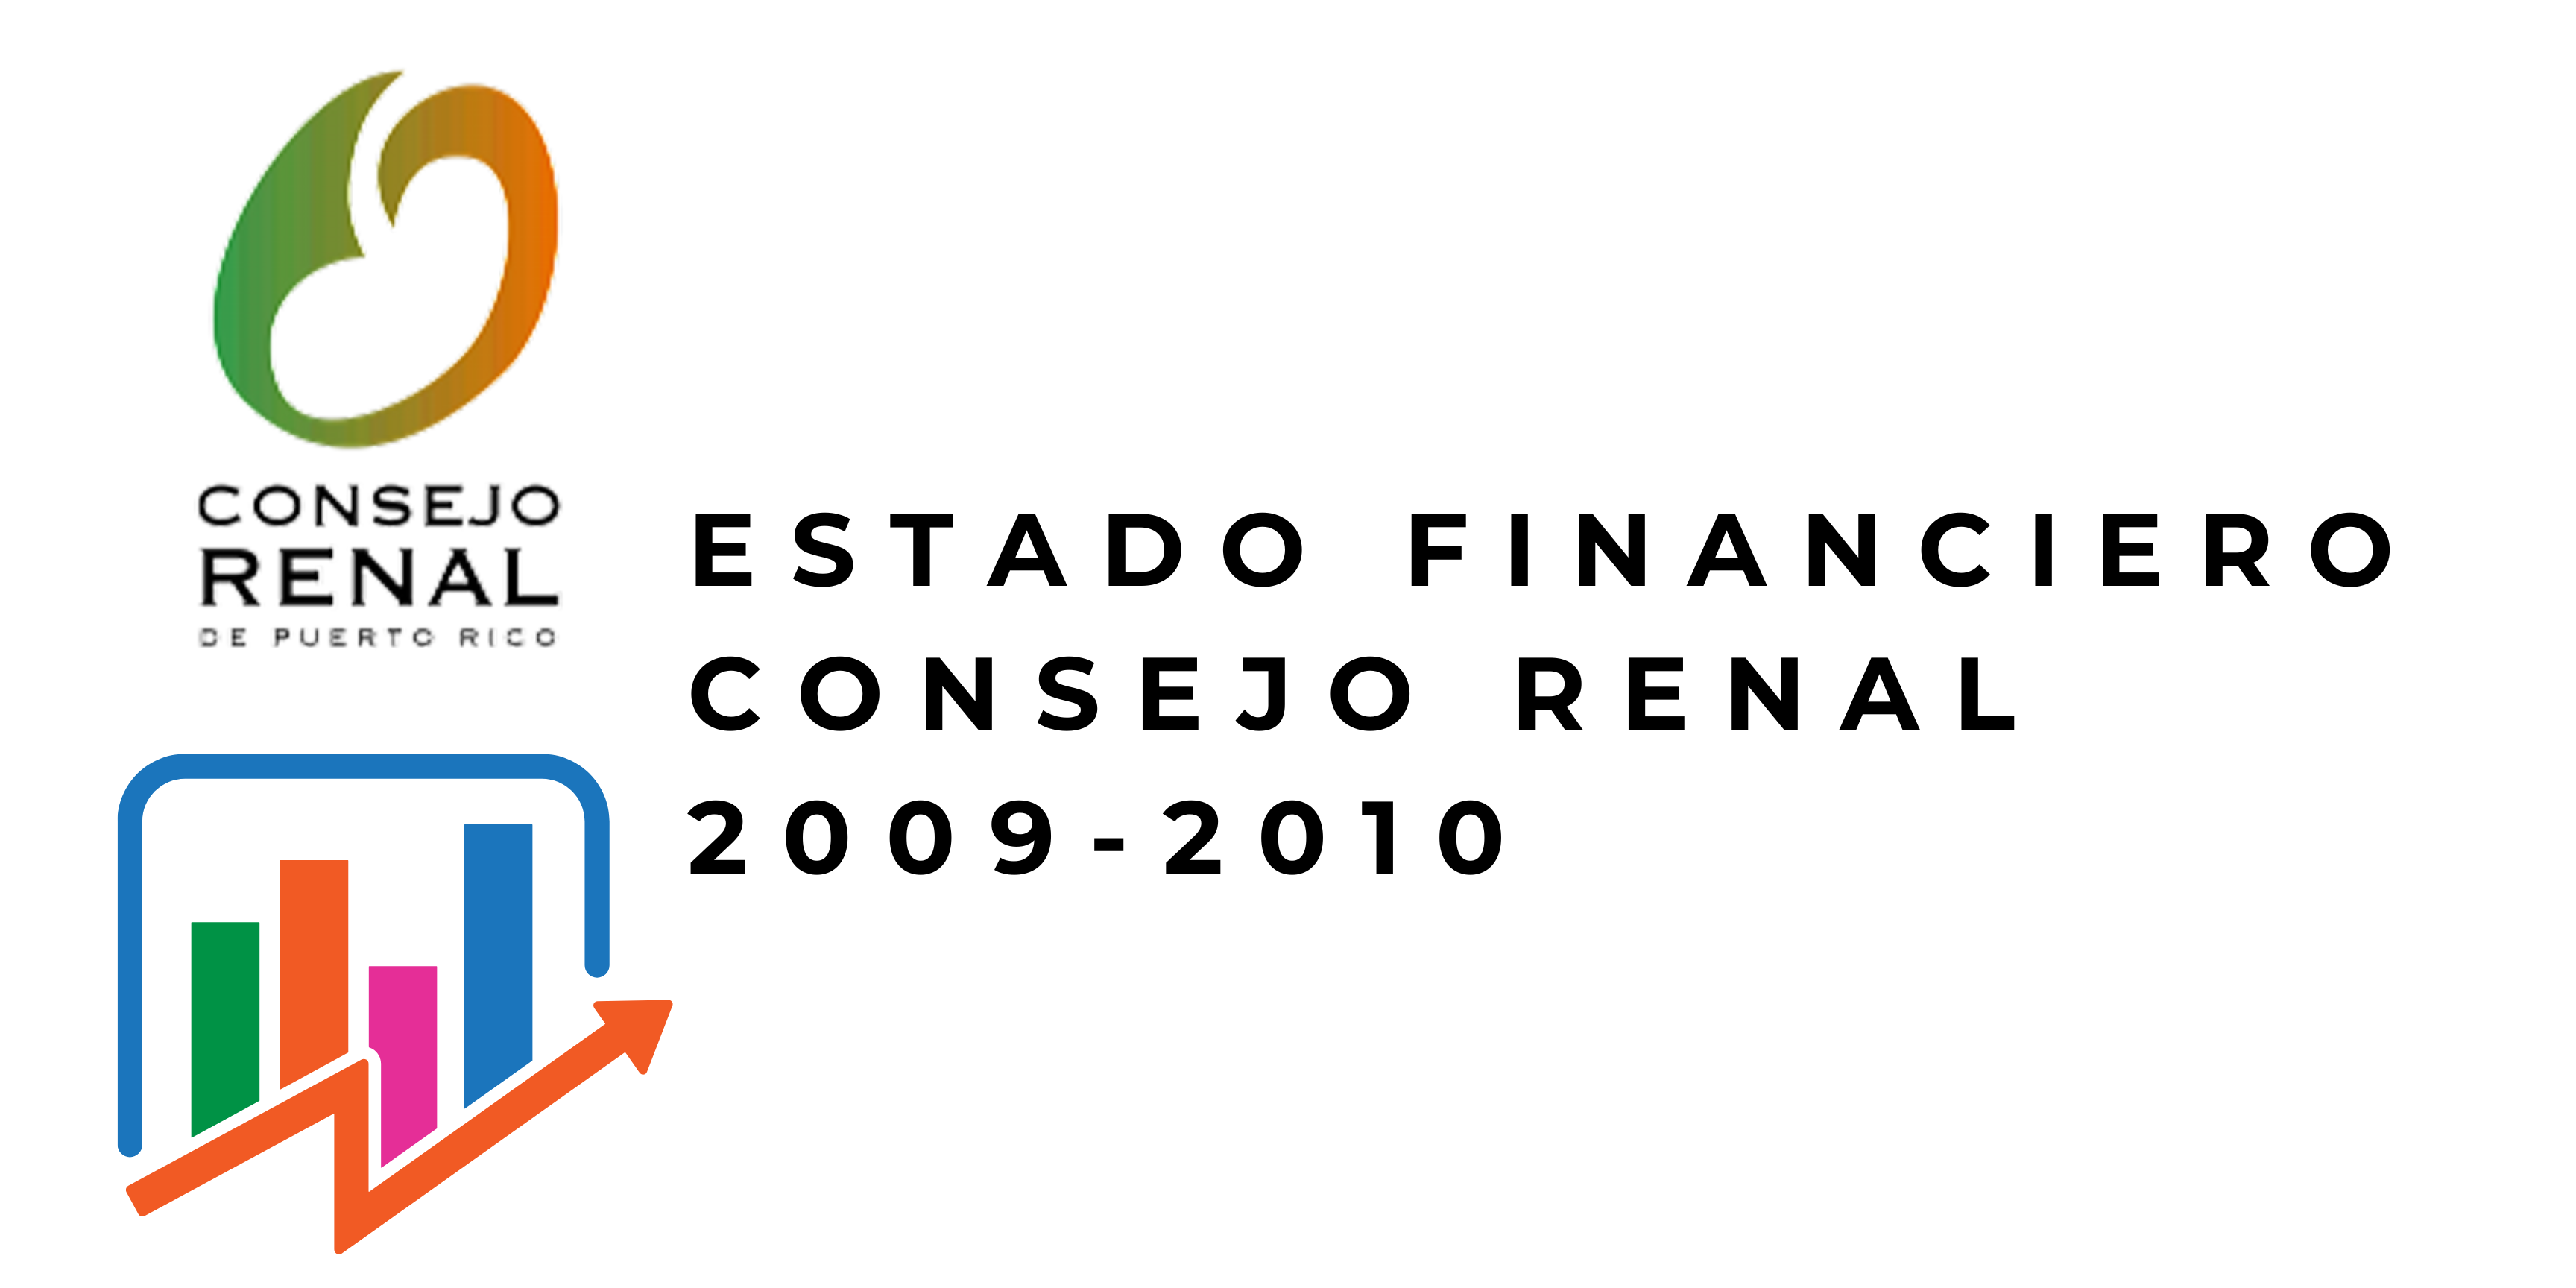 Estado Financiero Consejo Renal 2009 2010